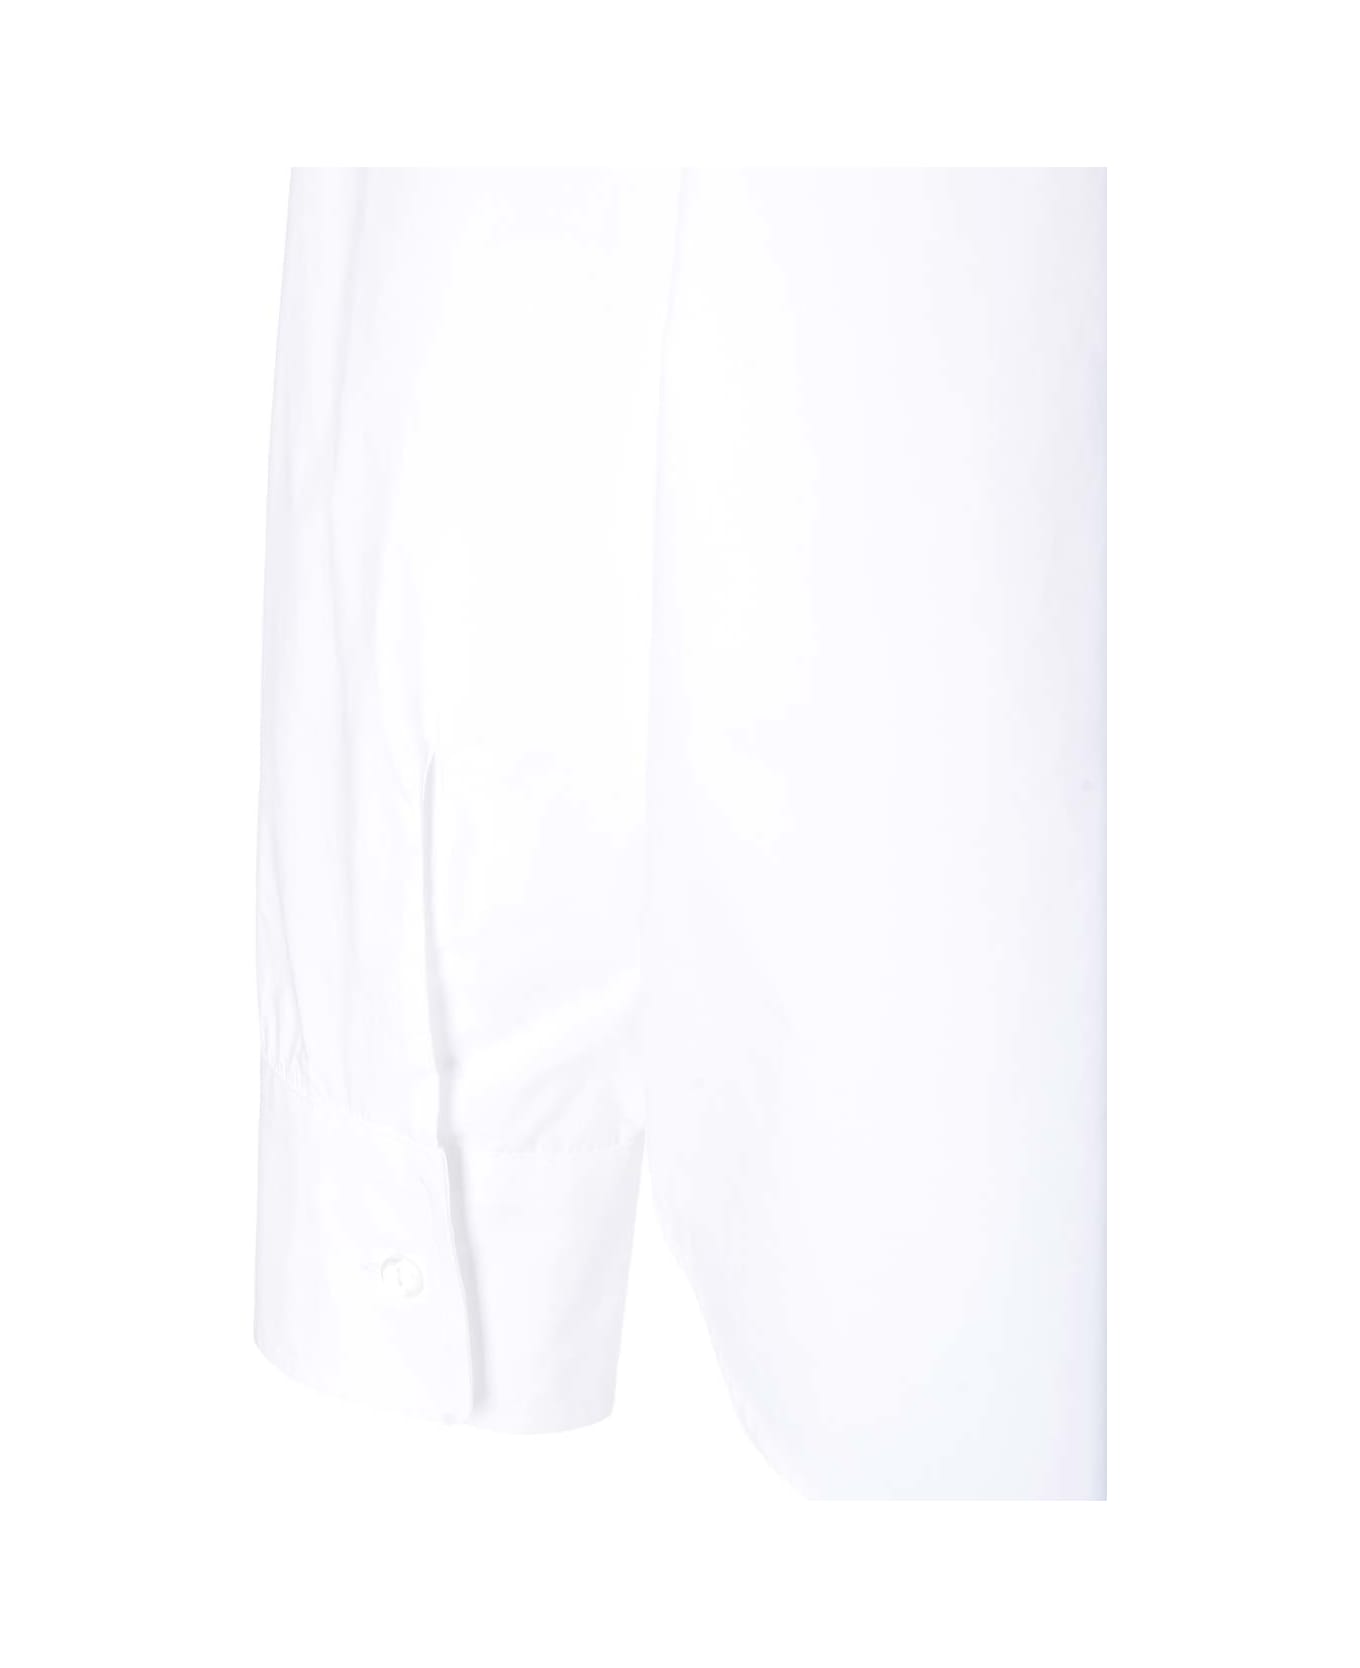 Parosh White Cotton Shirt - Bianco シャツ